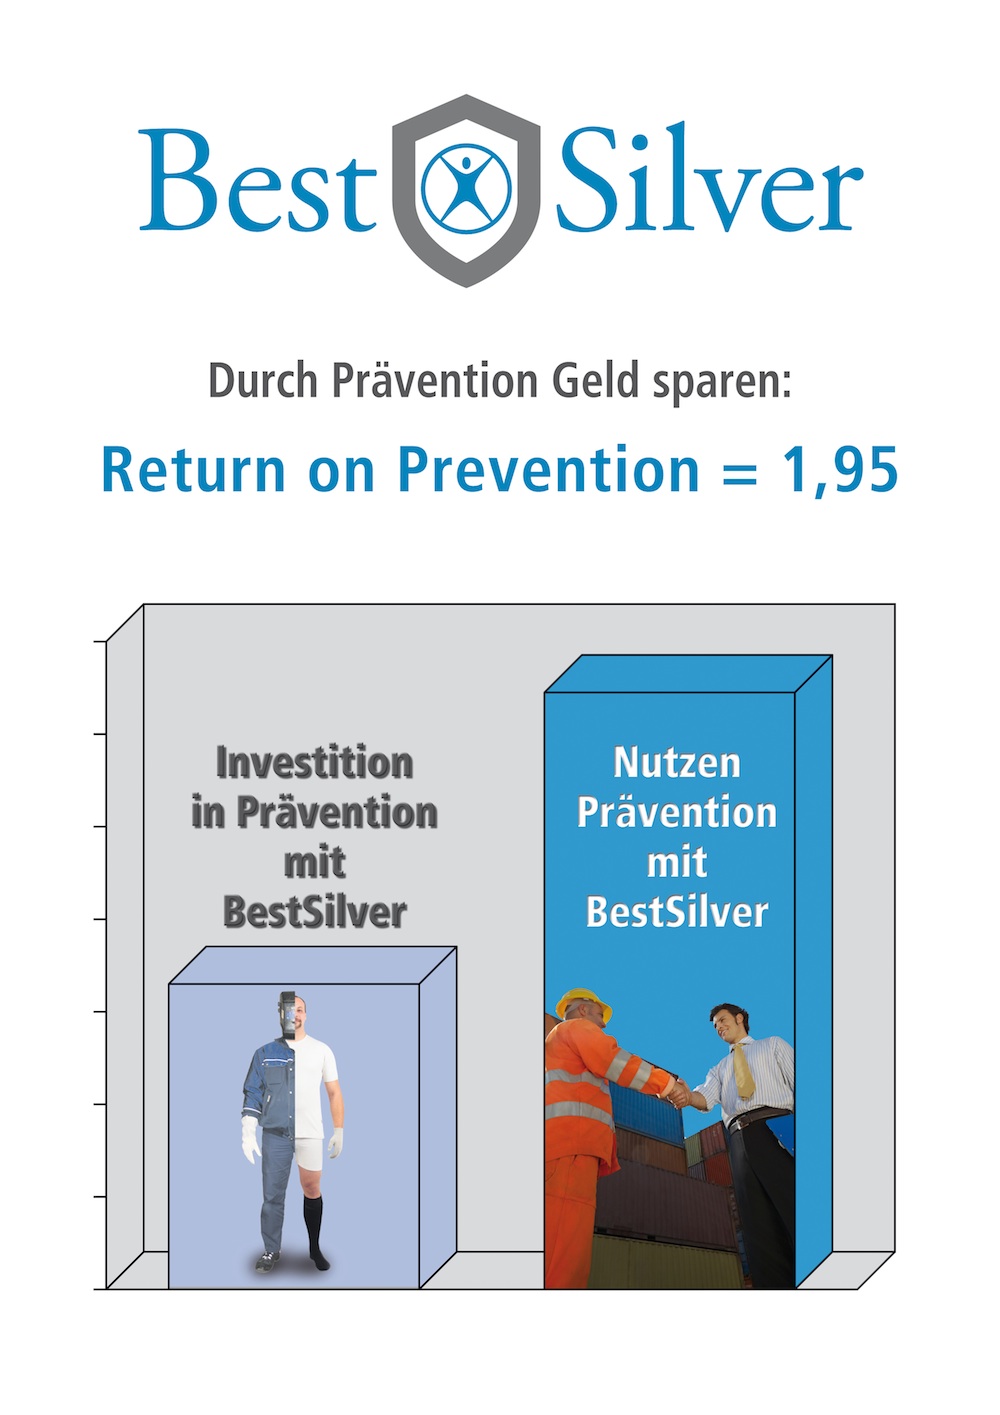 Return on Prevention of BestSilver Wear